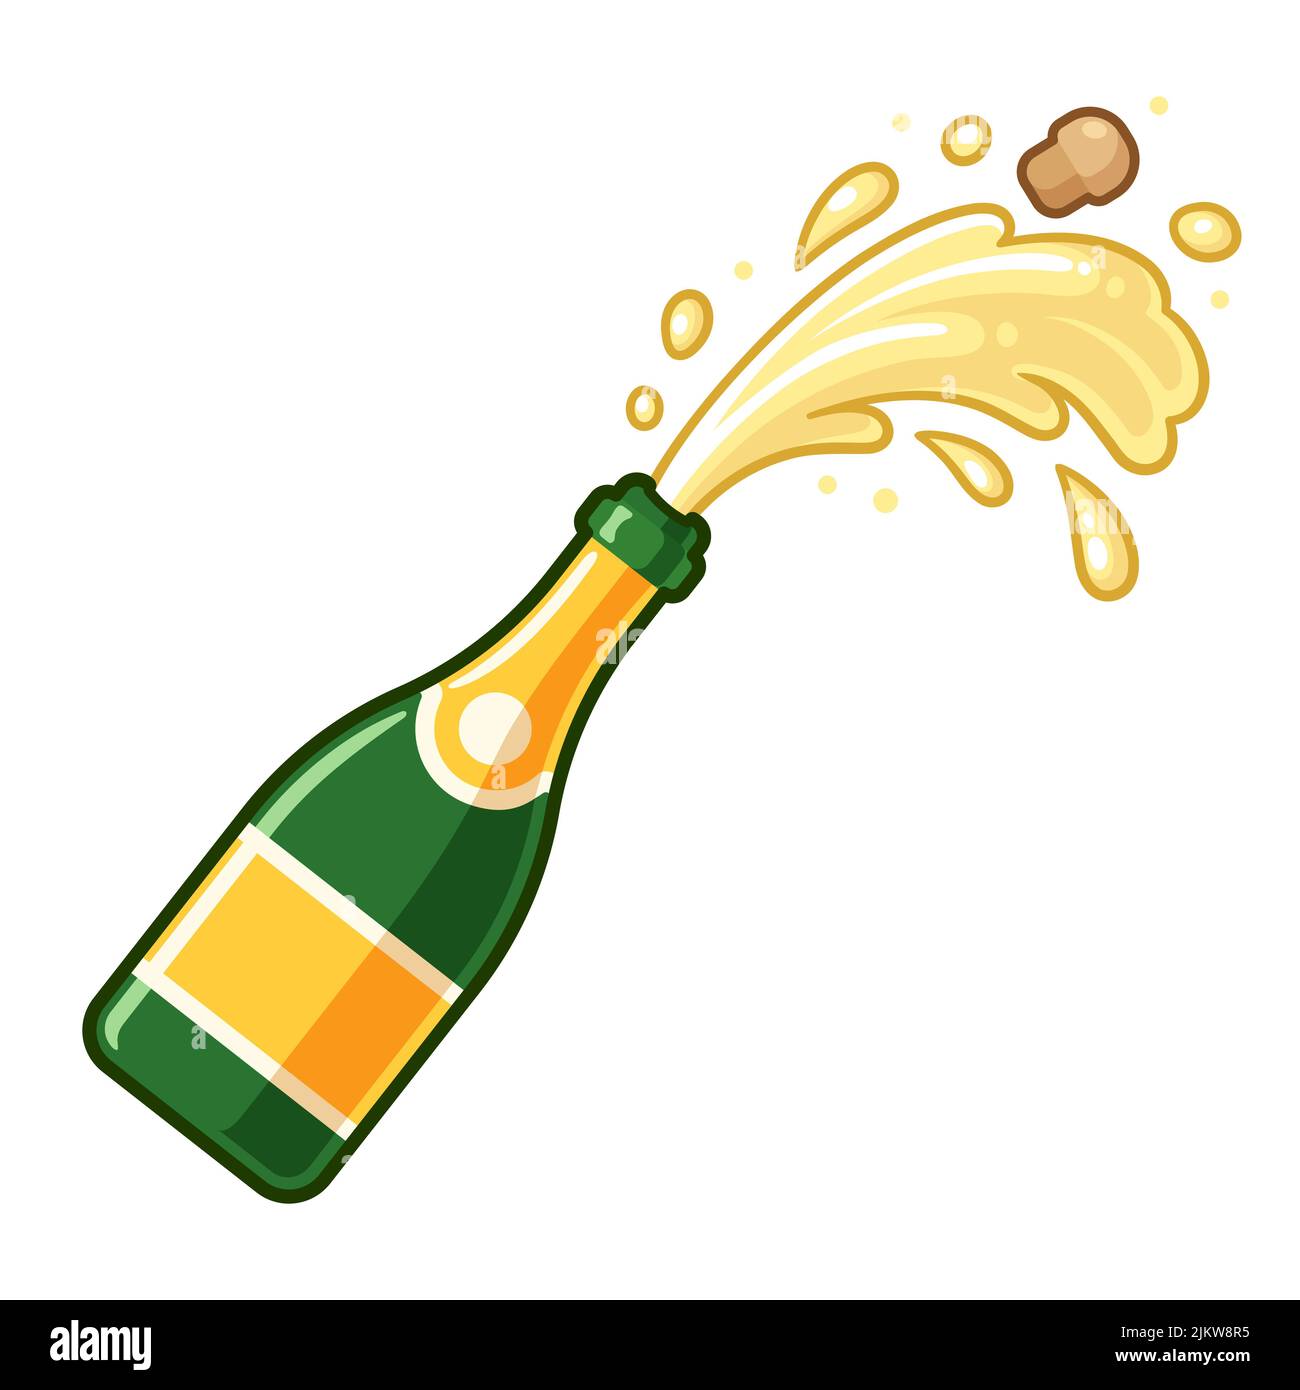 Die Champagnerflasche öffnet sich mit Kork und Schaumstoff, der herausfliegt. Cartoon-Vektor-Symbol, einfache Clip Art Illustration. Stock Vektor